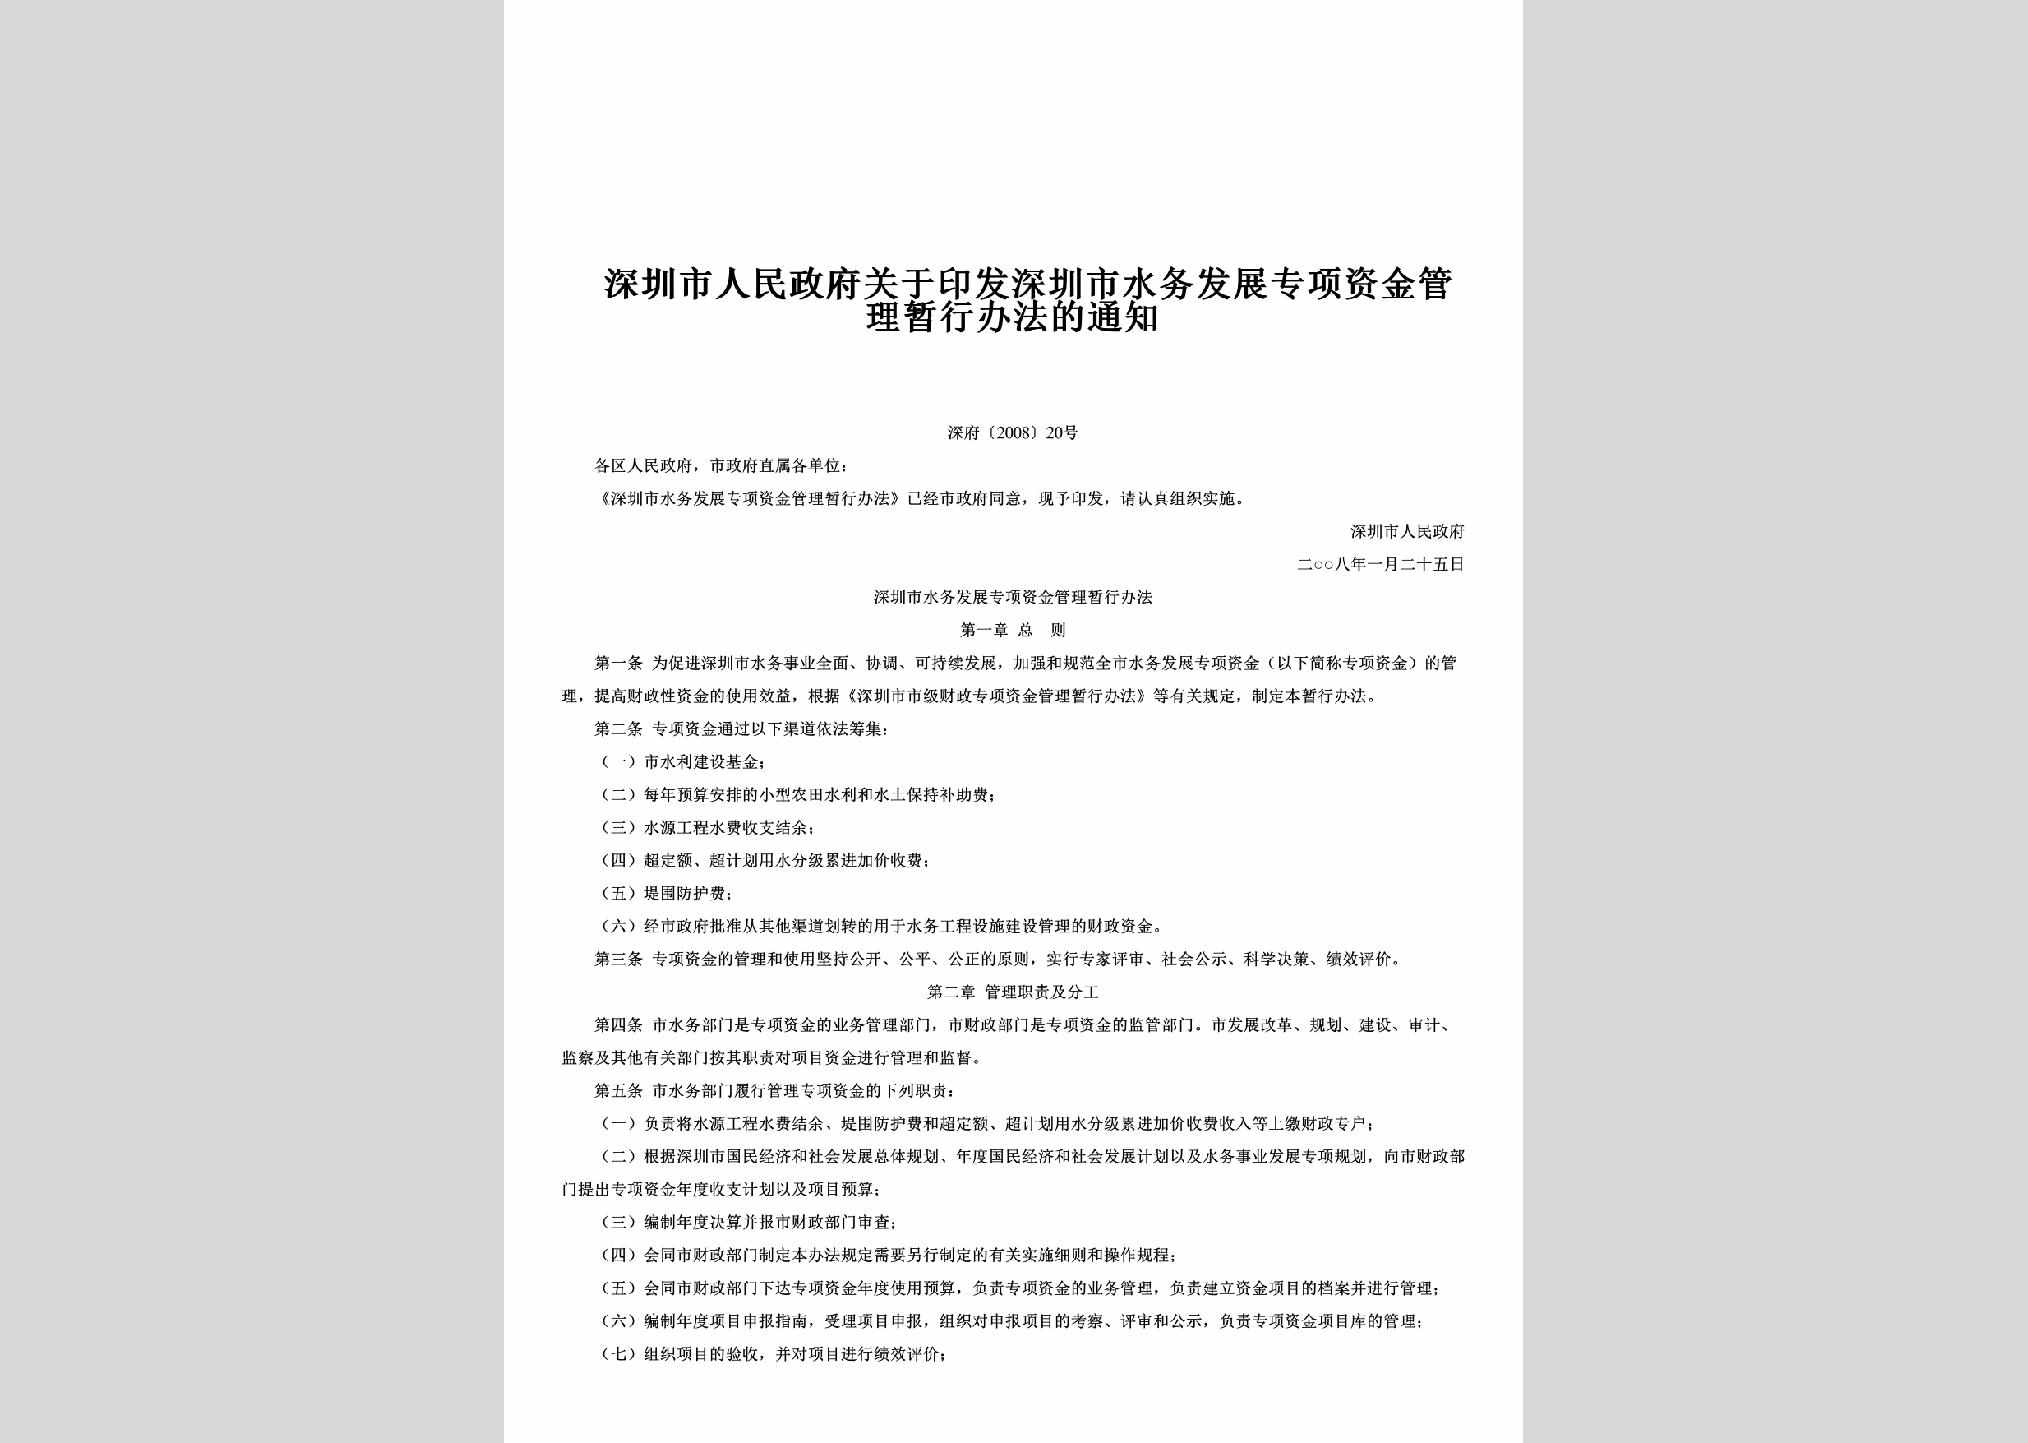 深府[2008]20号：关于印发深圳市水务发展专项资金管理暂行办法的通知